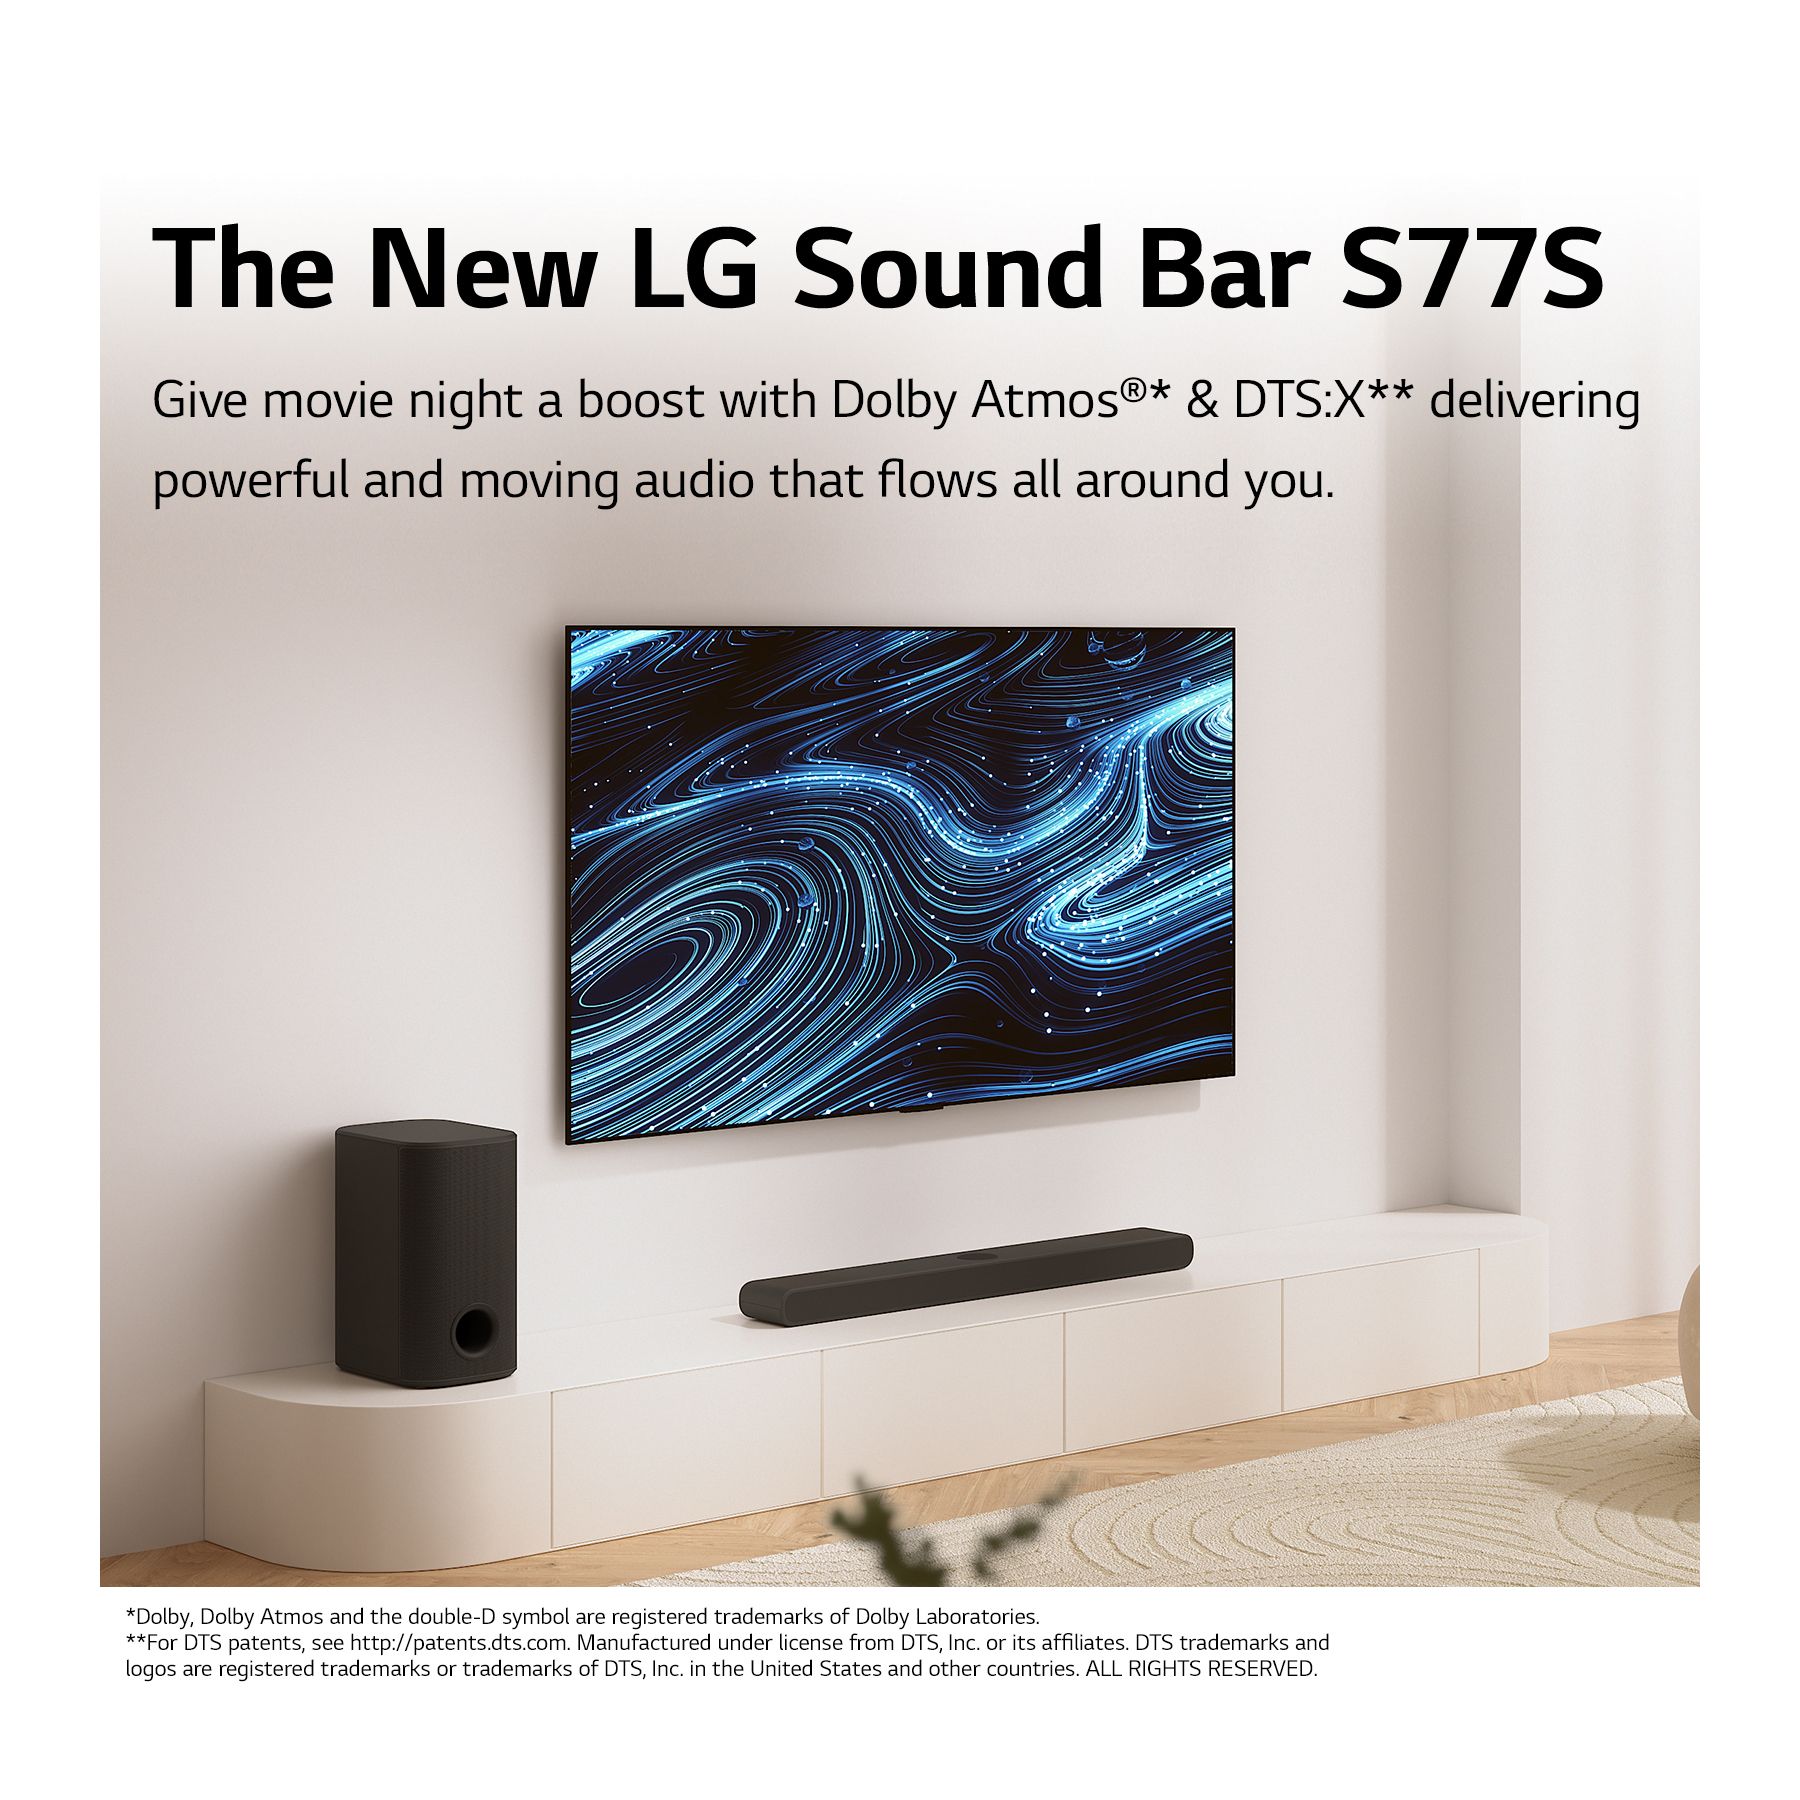 LG Soundbar with Dolby Atmos® 3.1.3 Channel